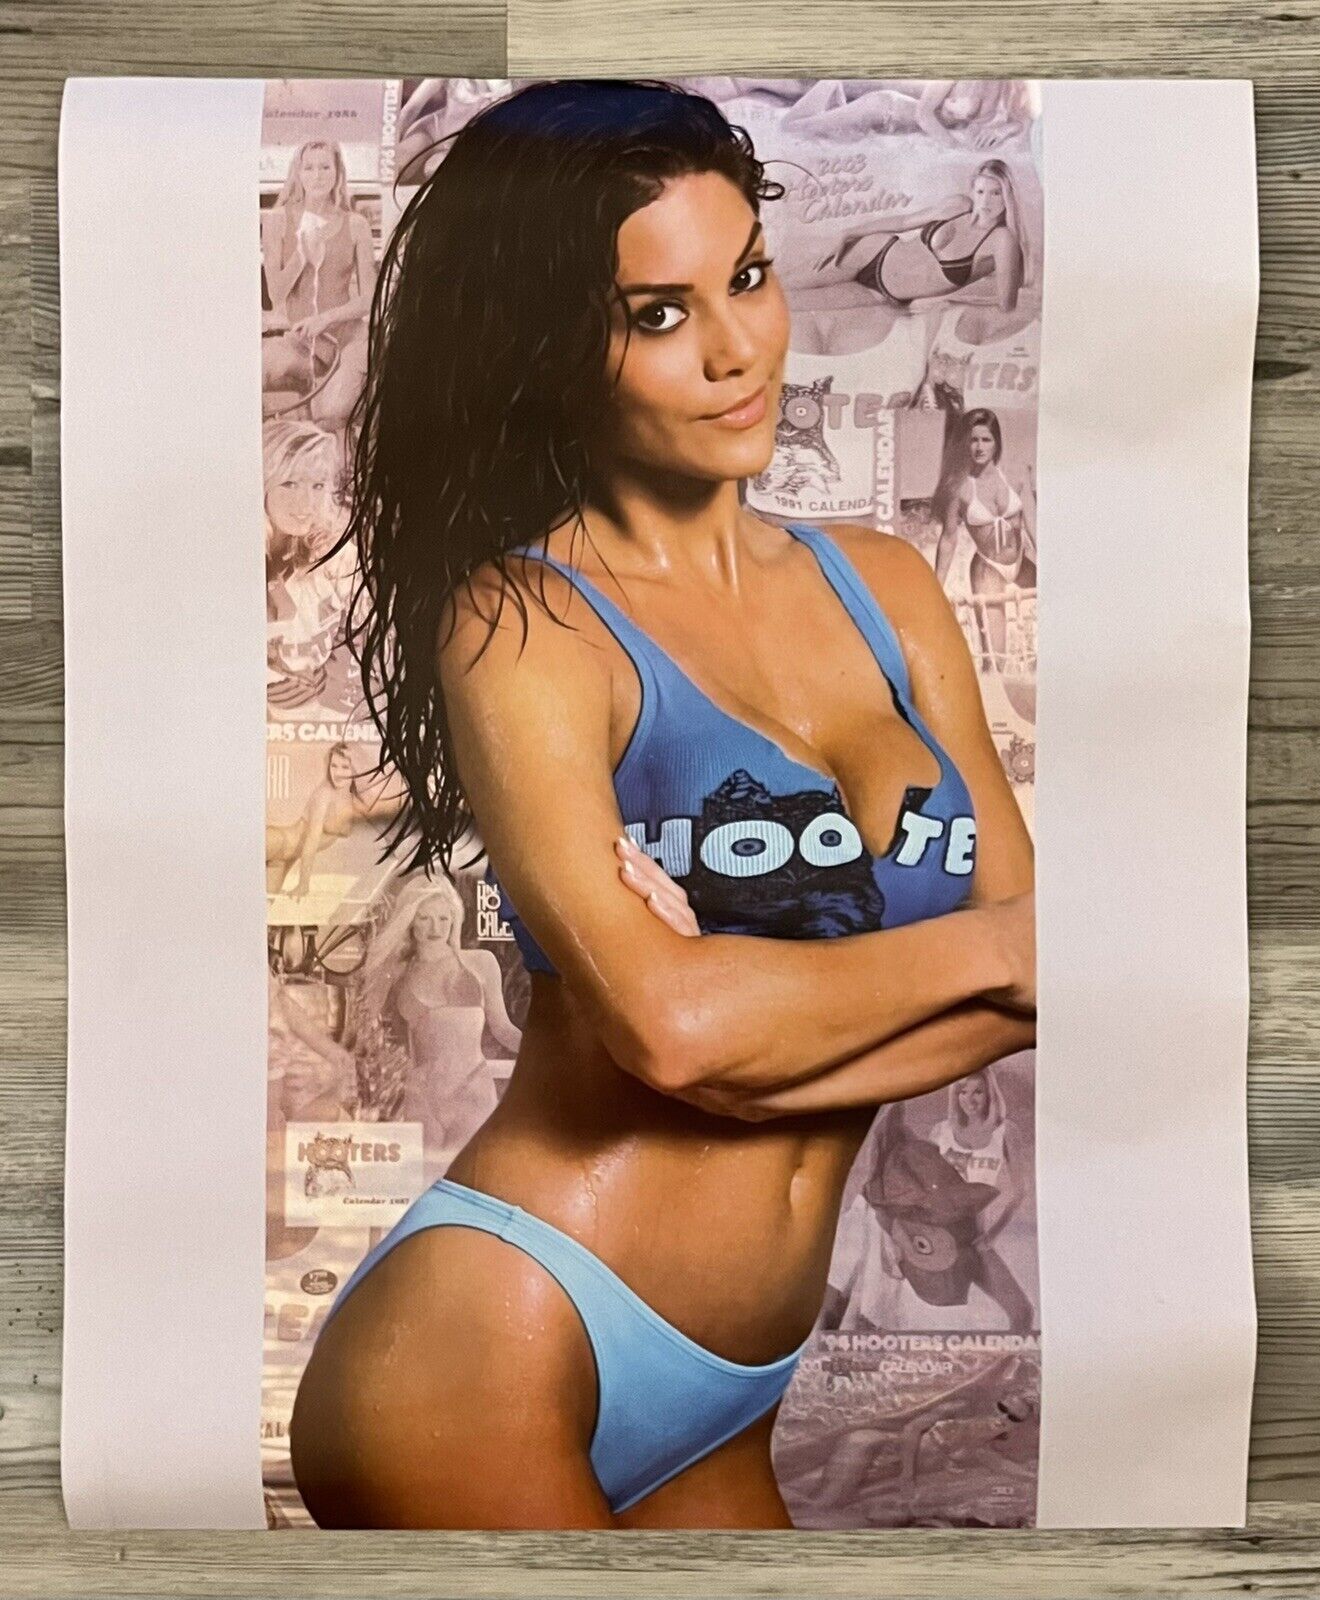 Hooters Girl Bikini Poster 20” x 16”